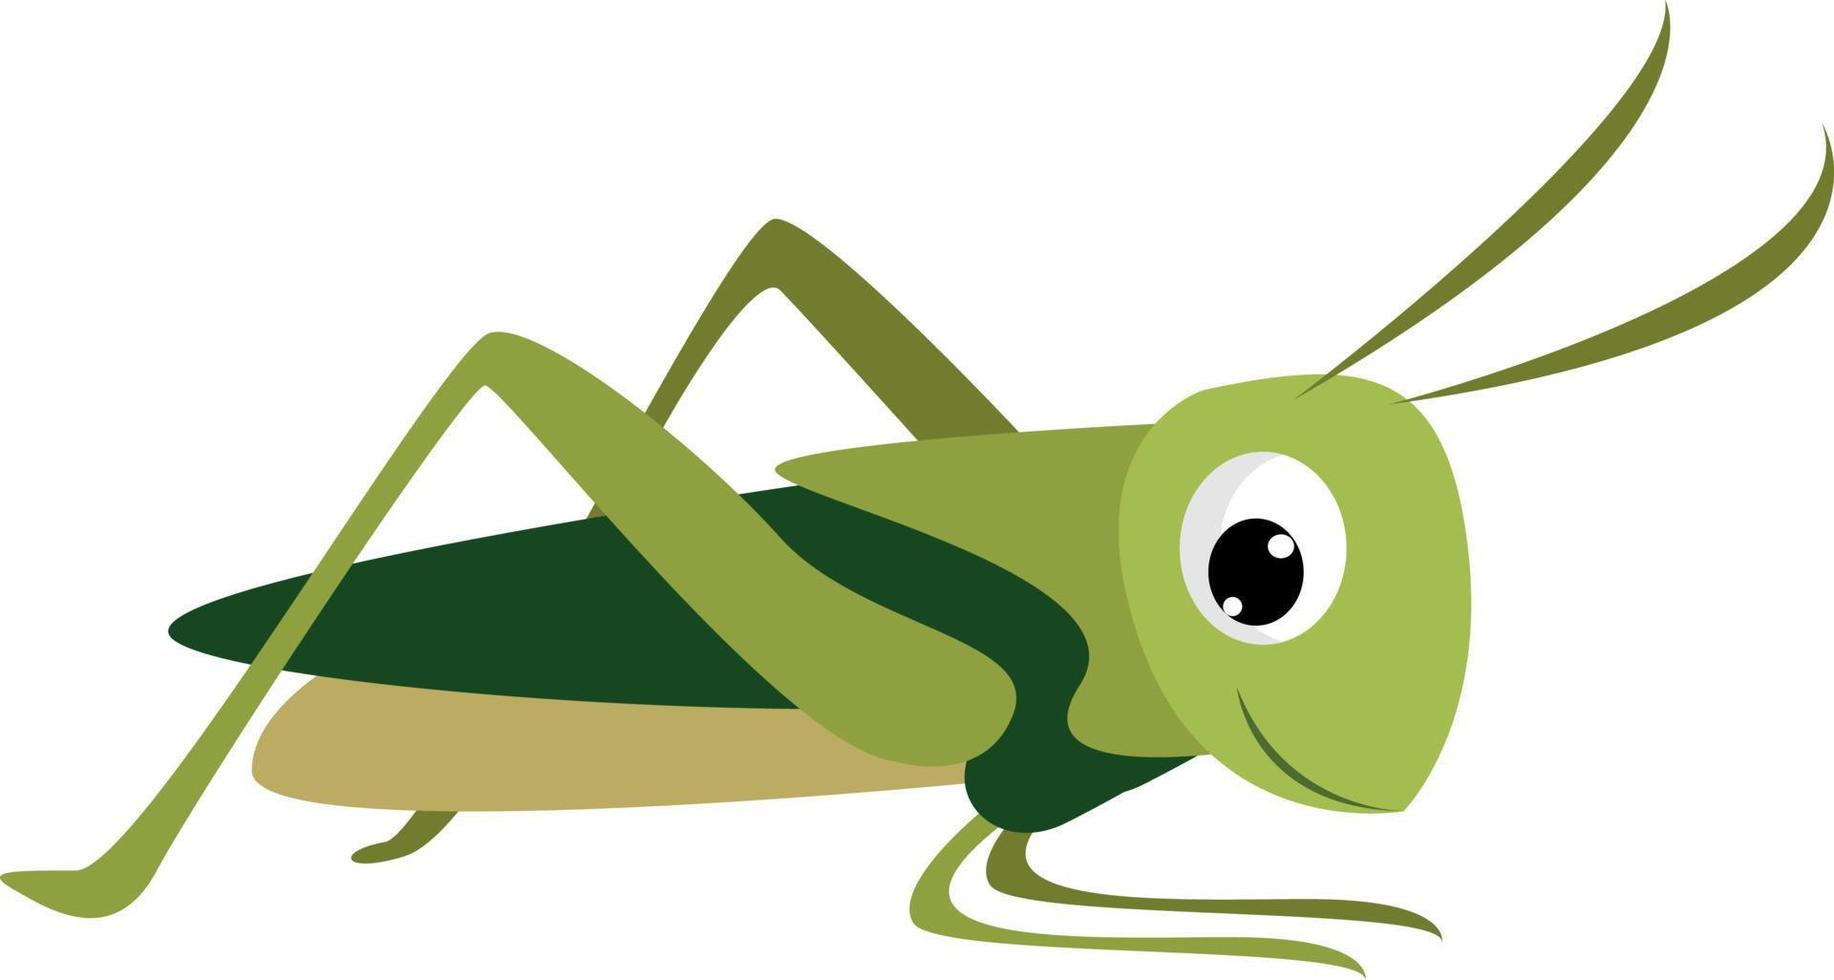 Smiling grasshopper, illustration, vector on white background.